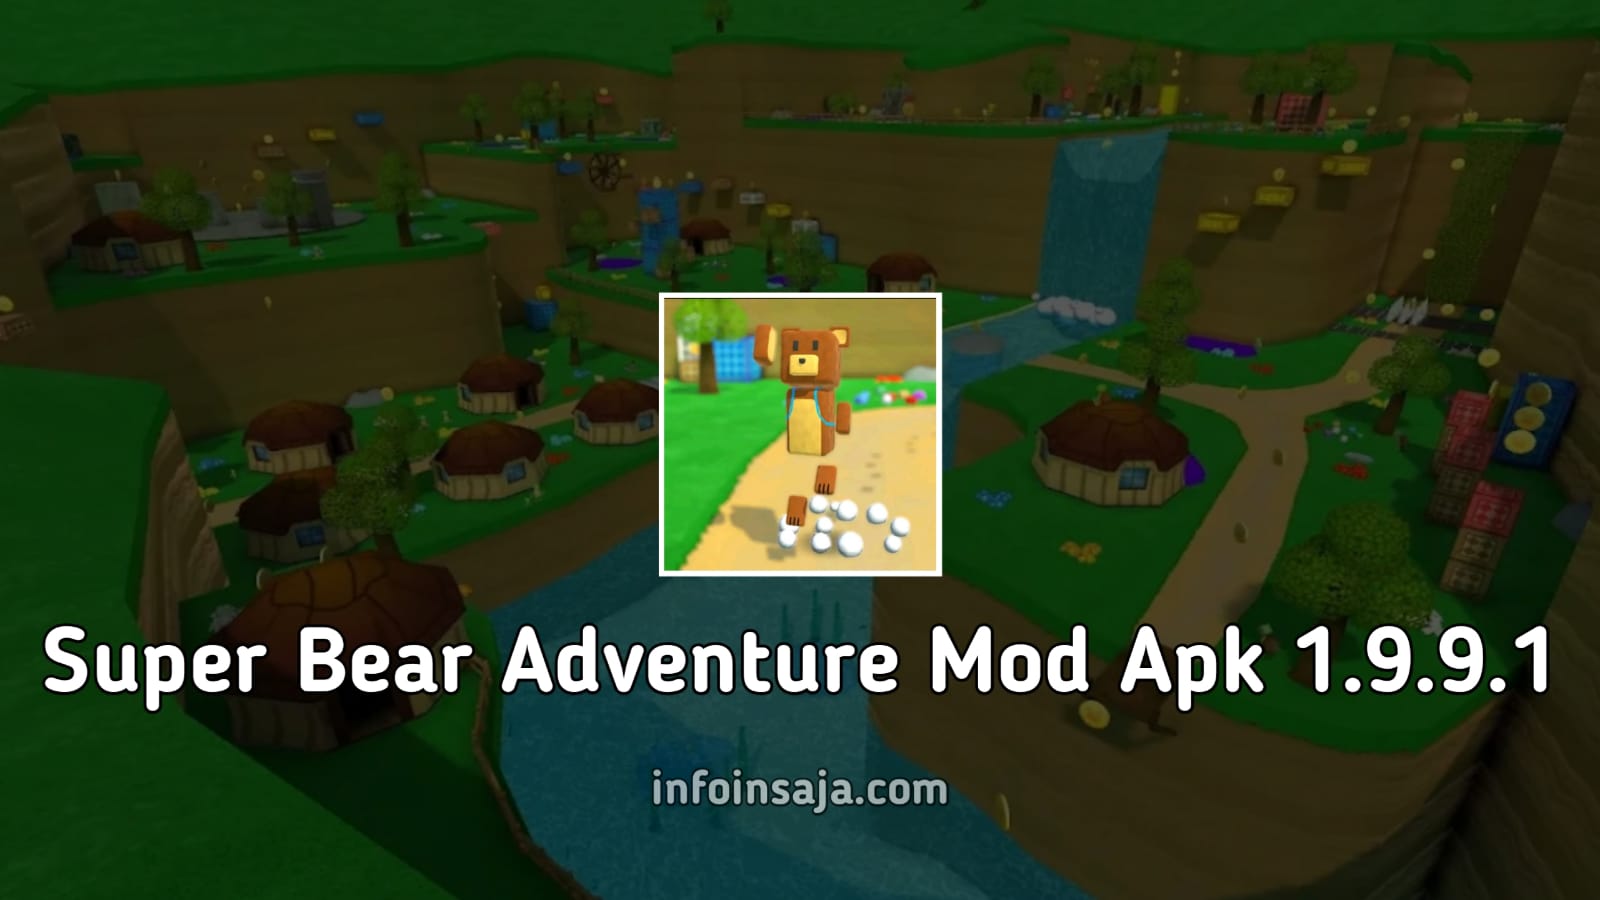 Super Bear Adventure Mod Apk 1.9.9.1